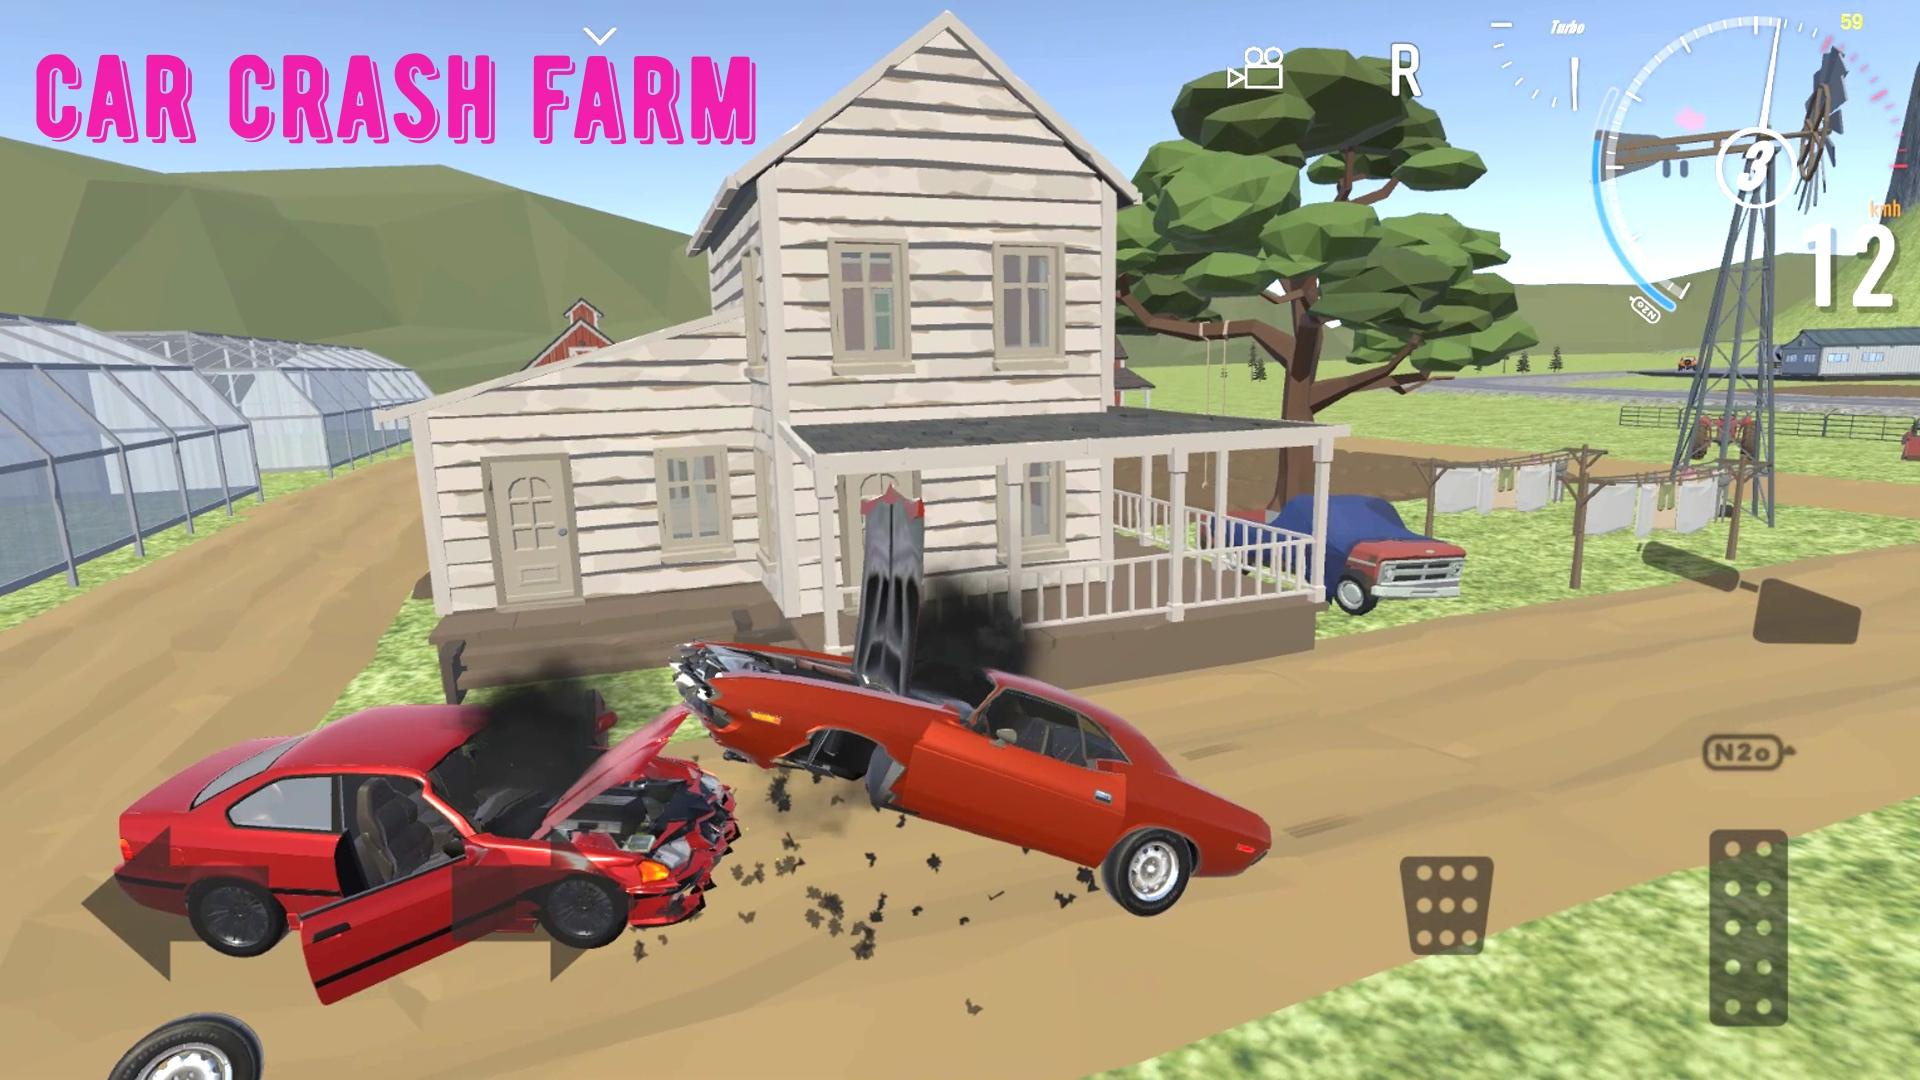 Скачать Car Crash Farm На ПК | Официальный Представитель GameLoop